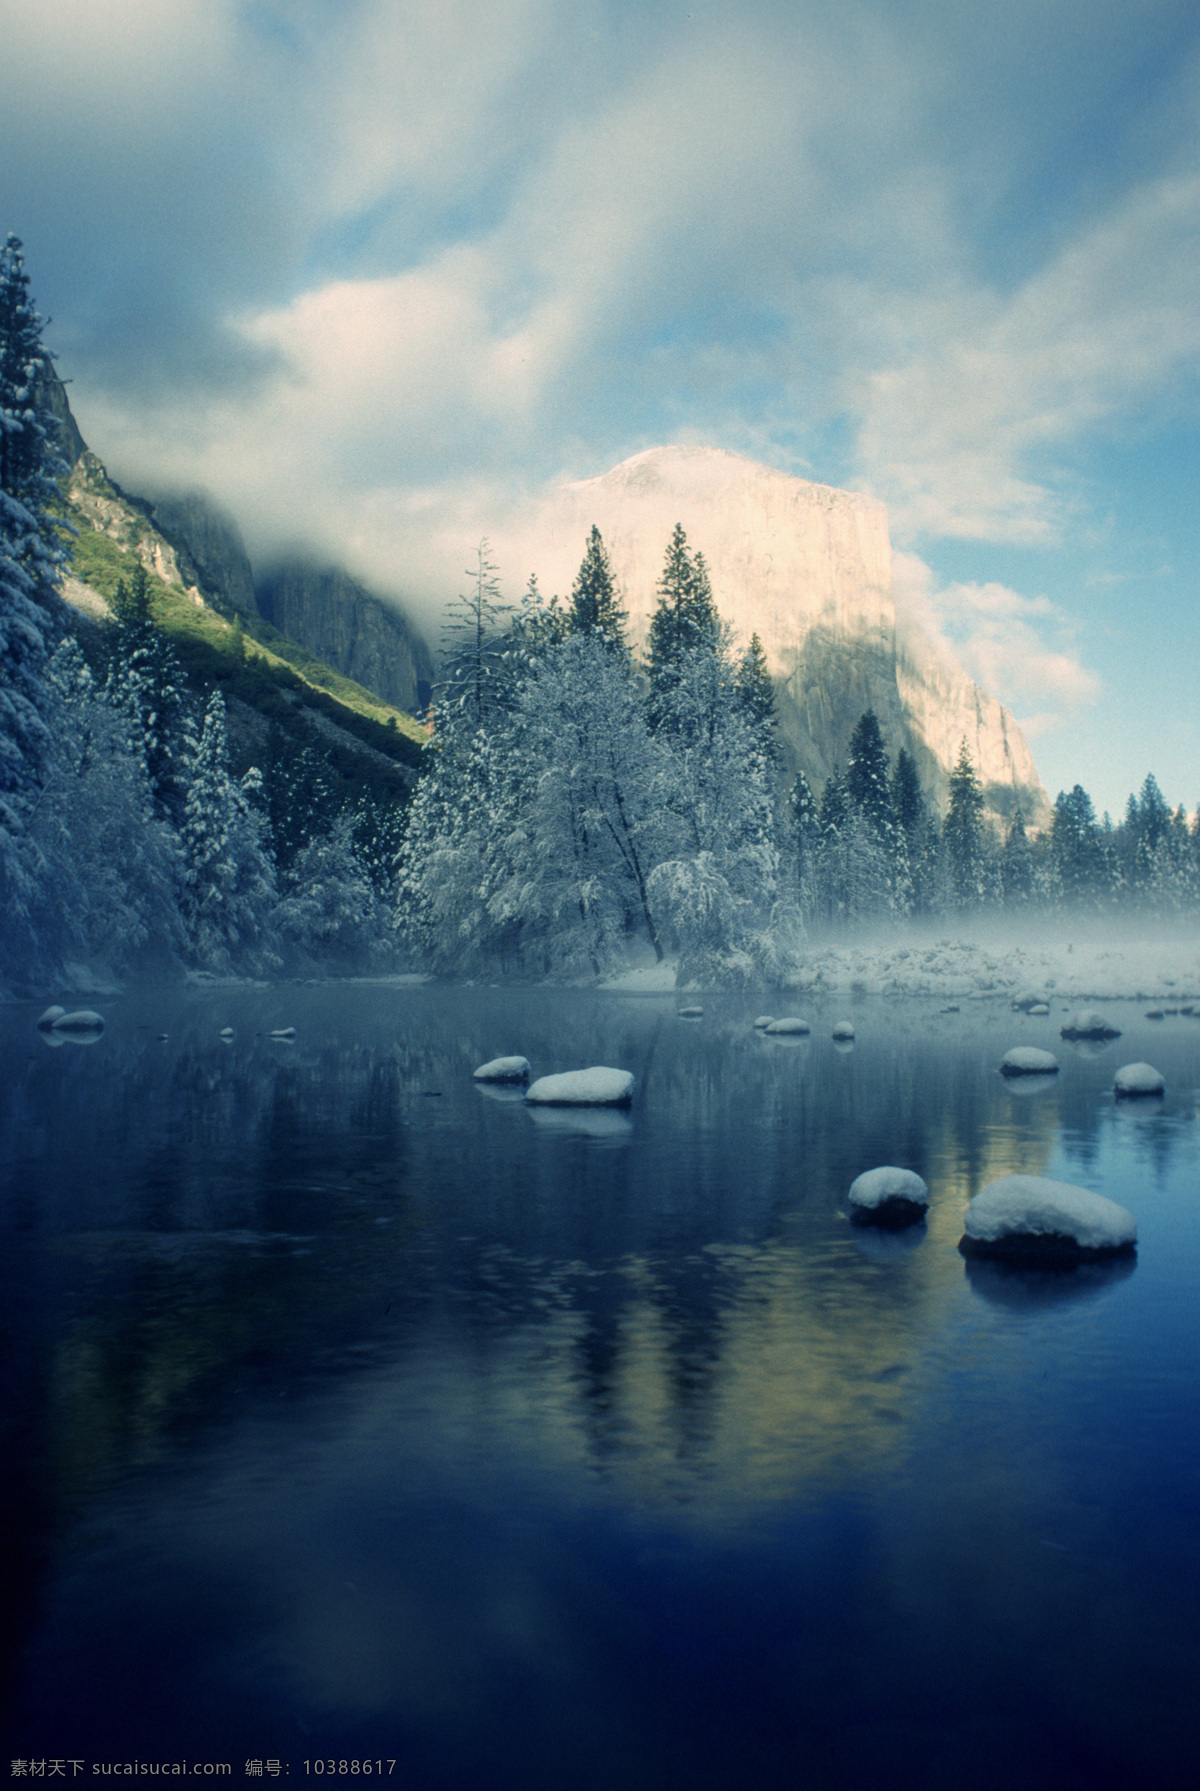 冬天 湖泊 美景 雪山 山峰 湖面 倒影 湖水 景色 风景 摄影图 高清图片 山水风景 风景图片